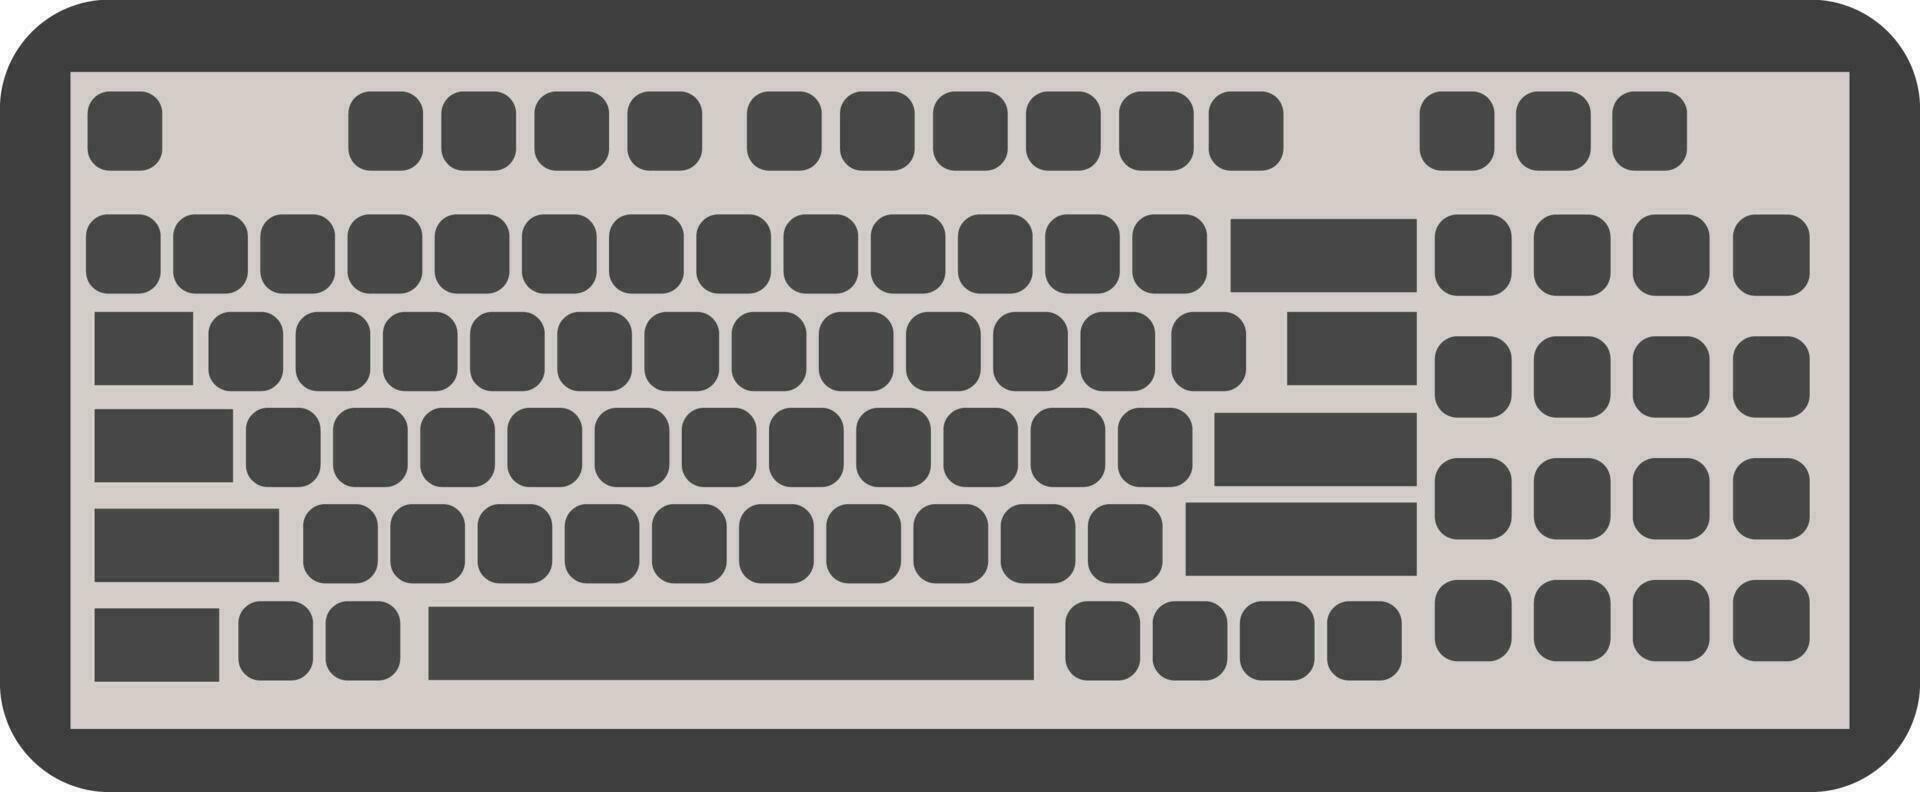 vlak stijl icoon van een toetsenbord. vector